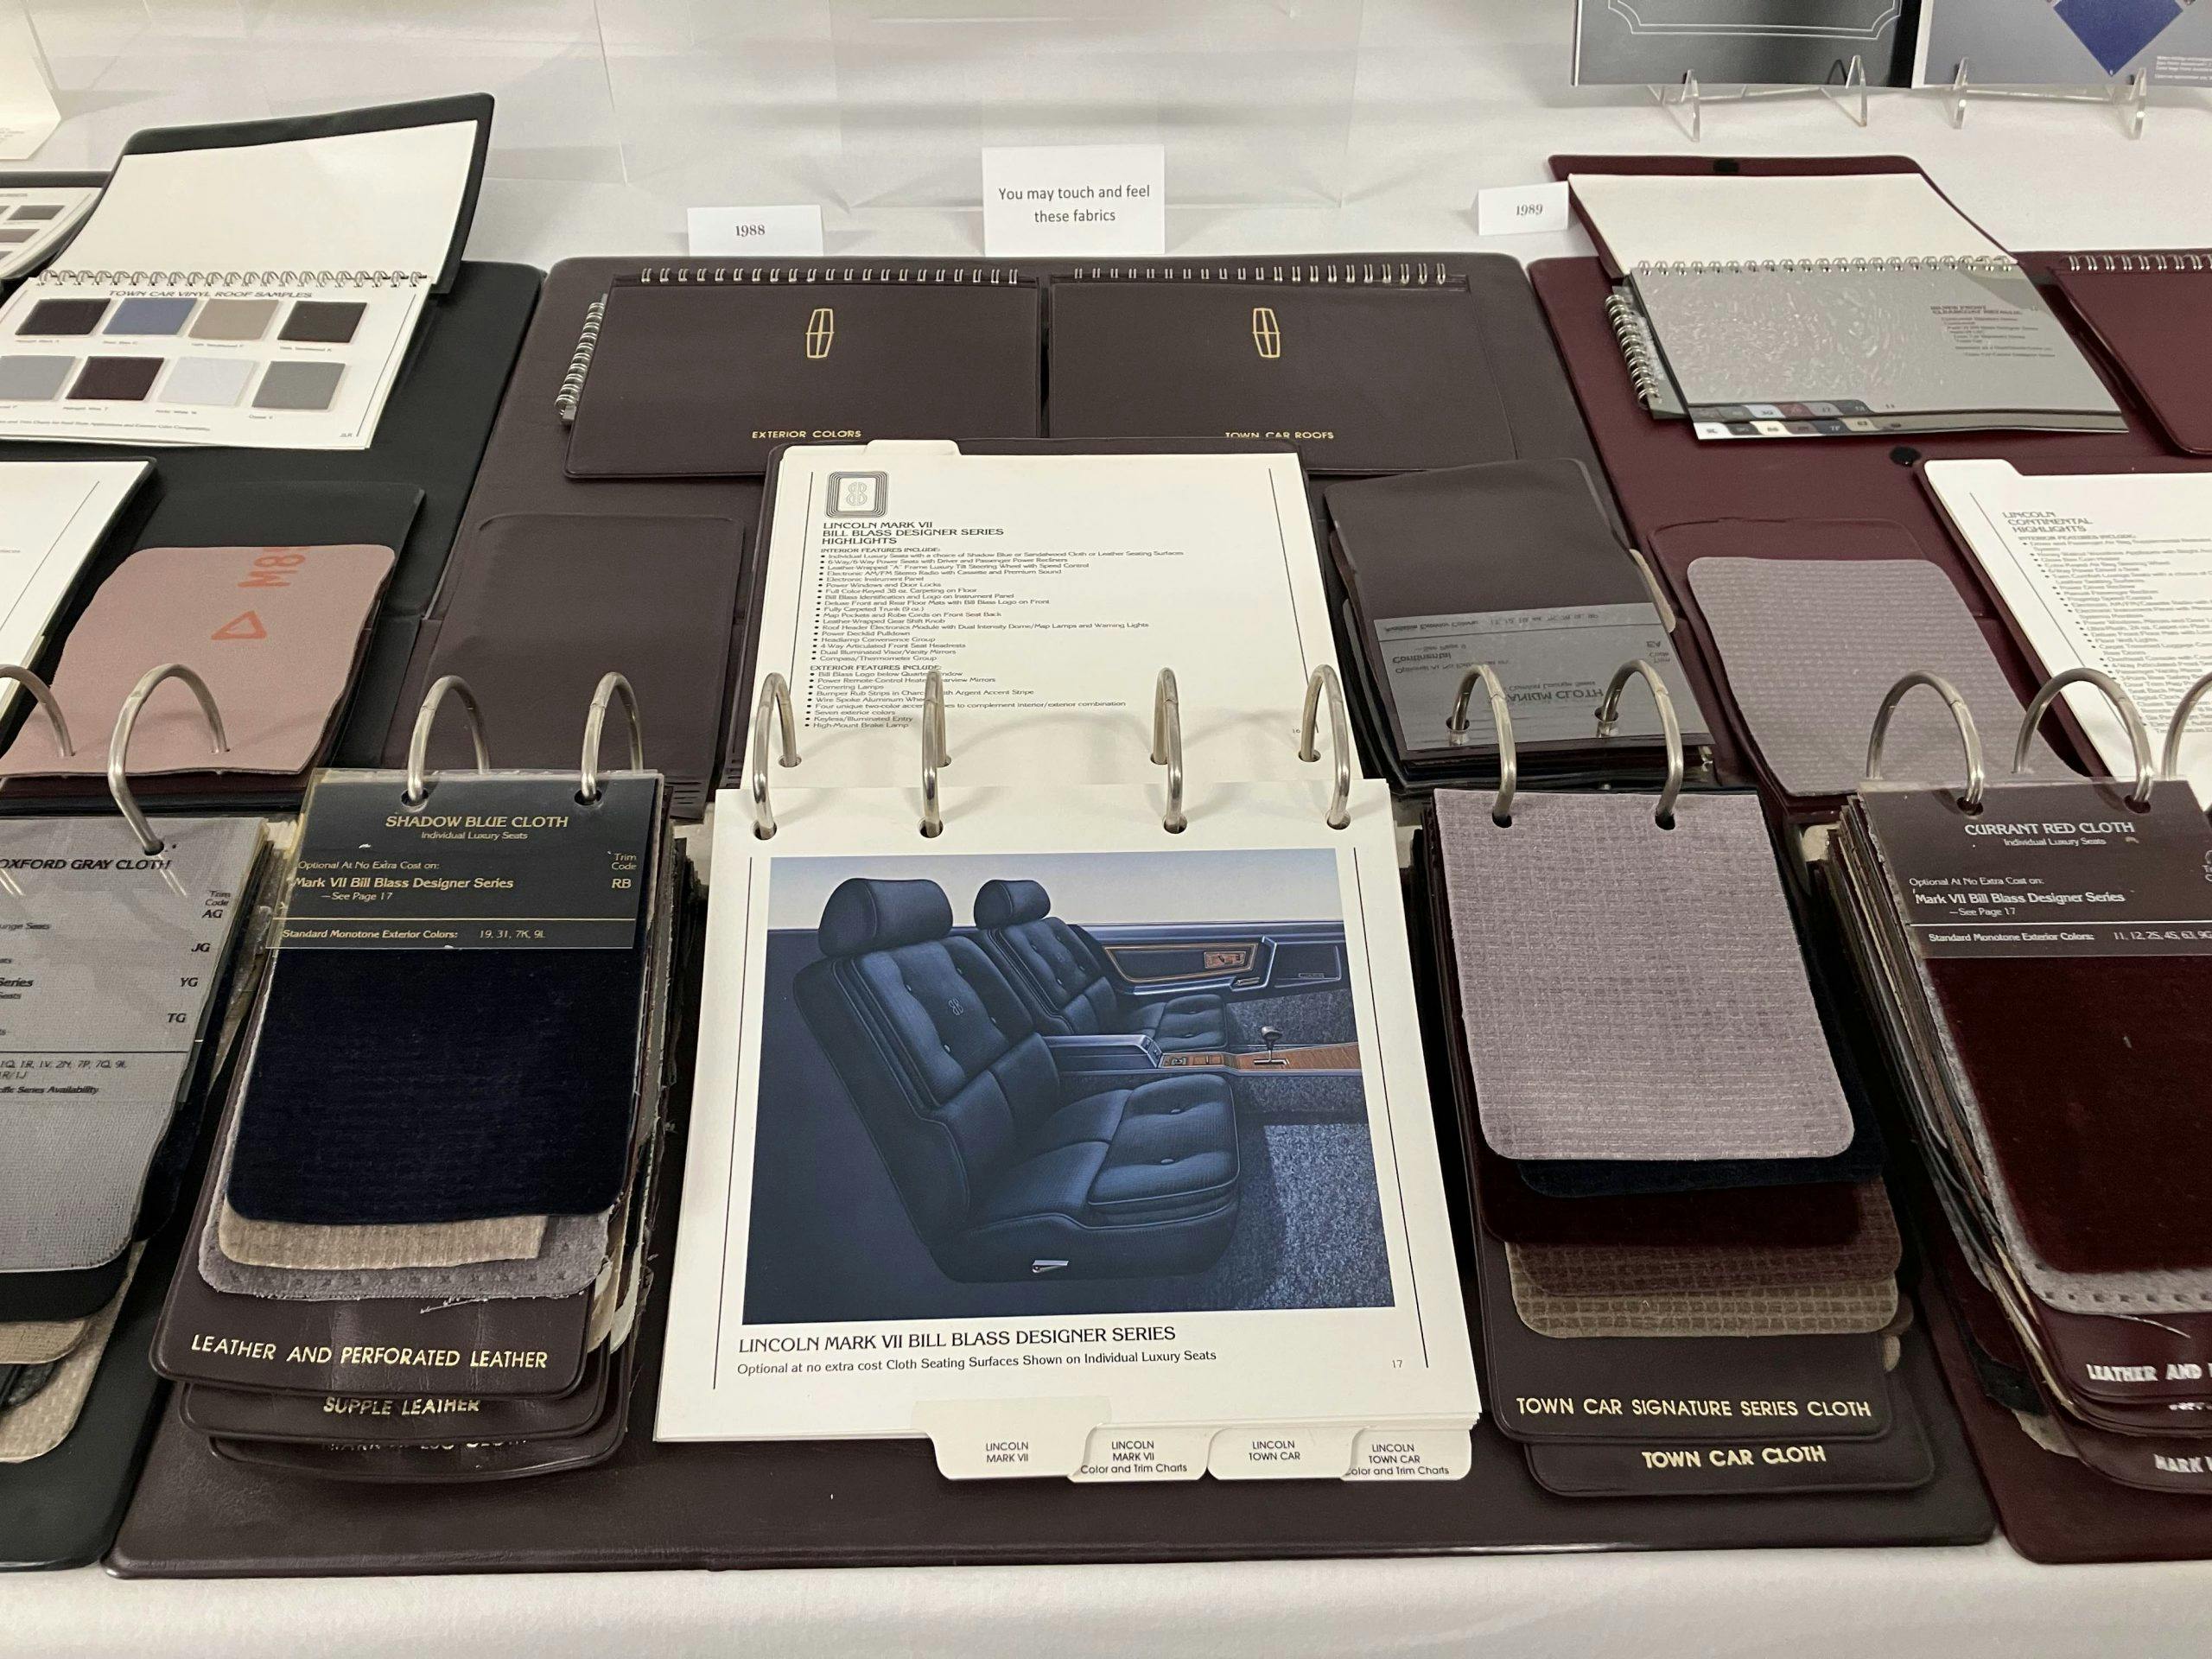 Lincoln Archive Experience Memorabilia